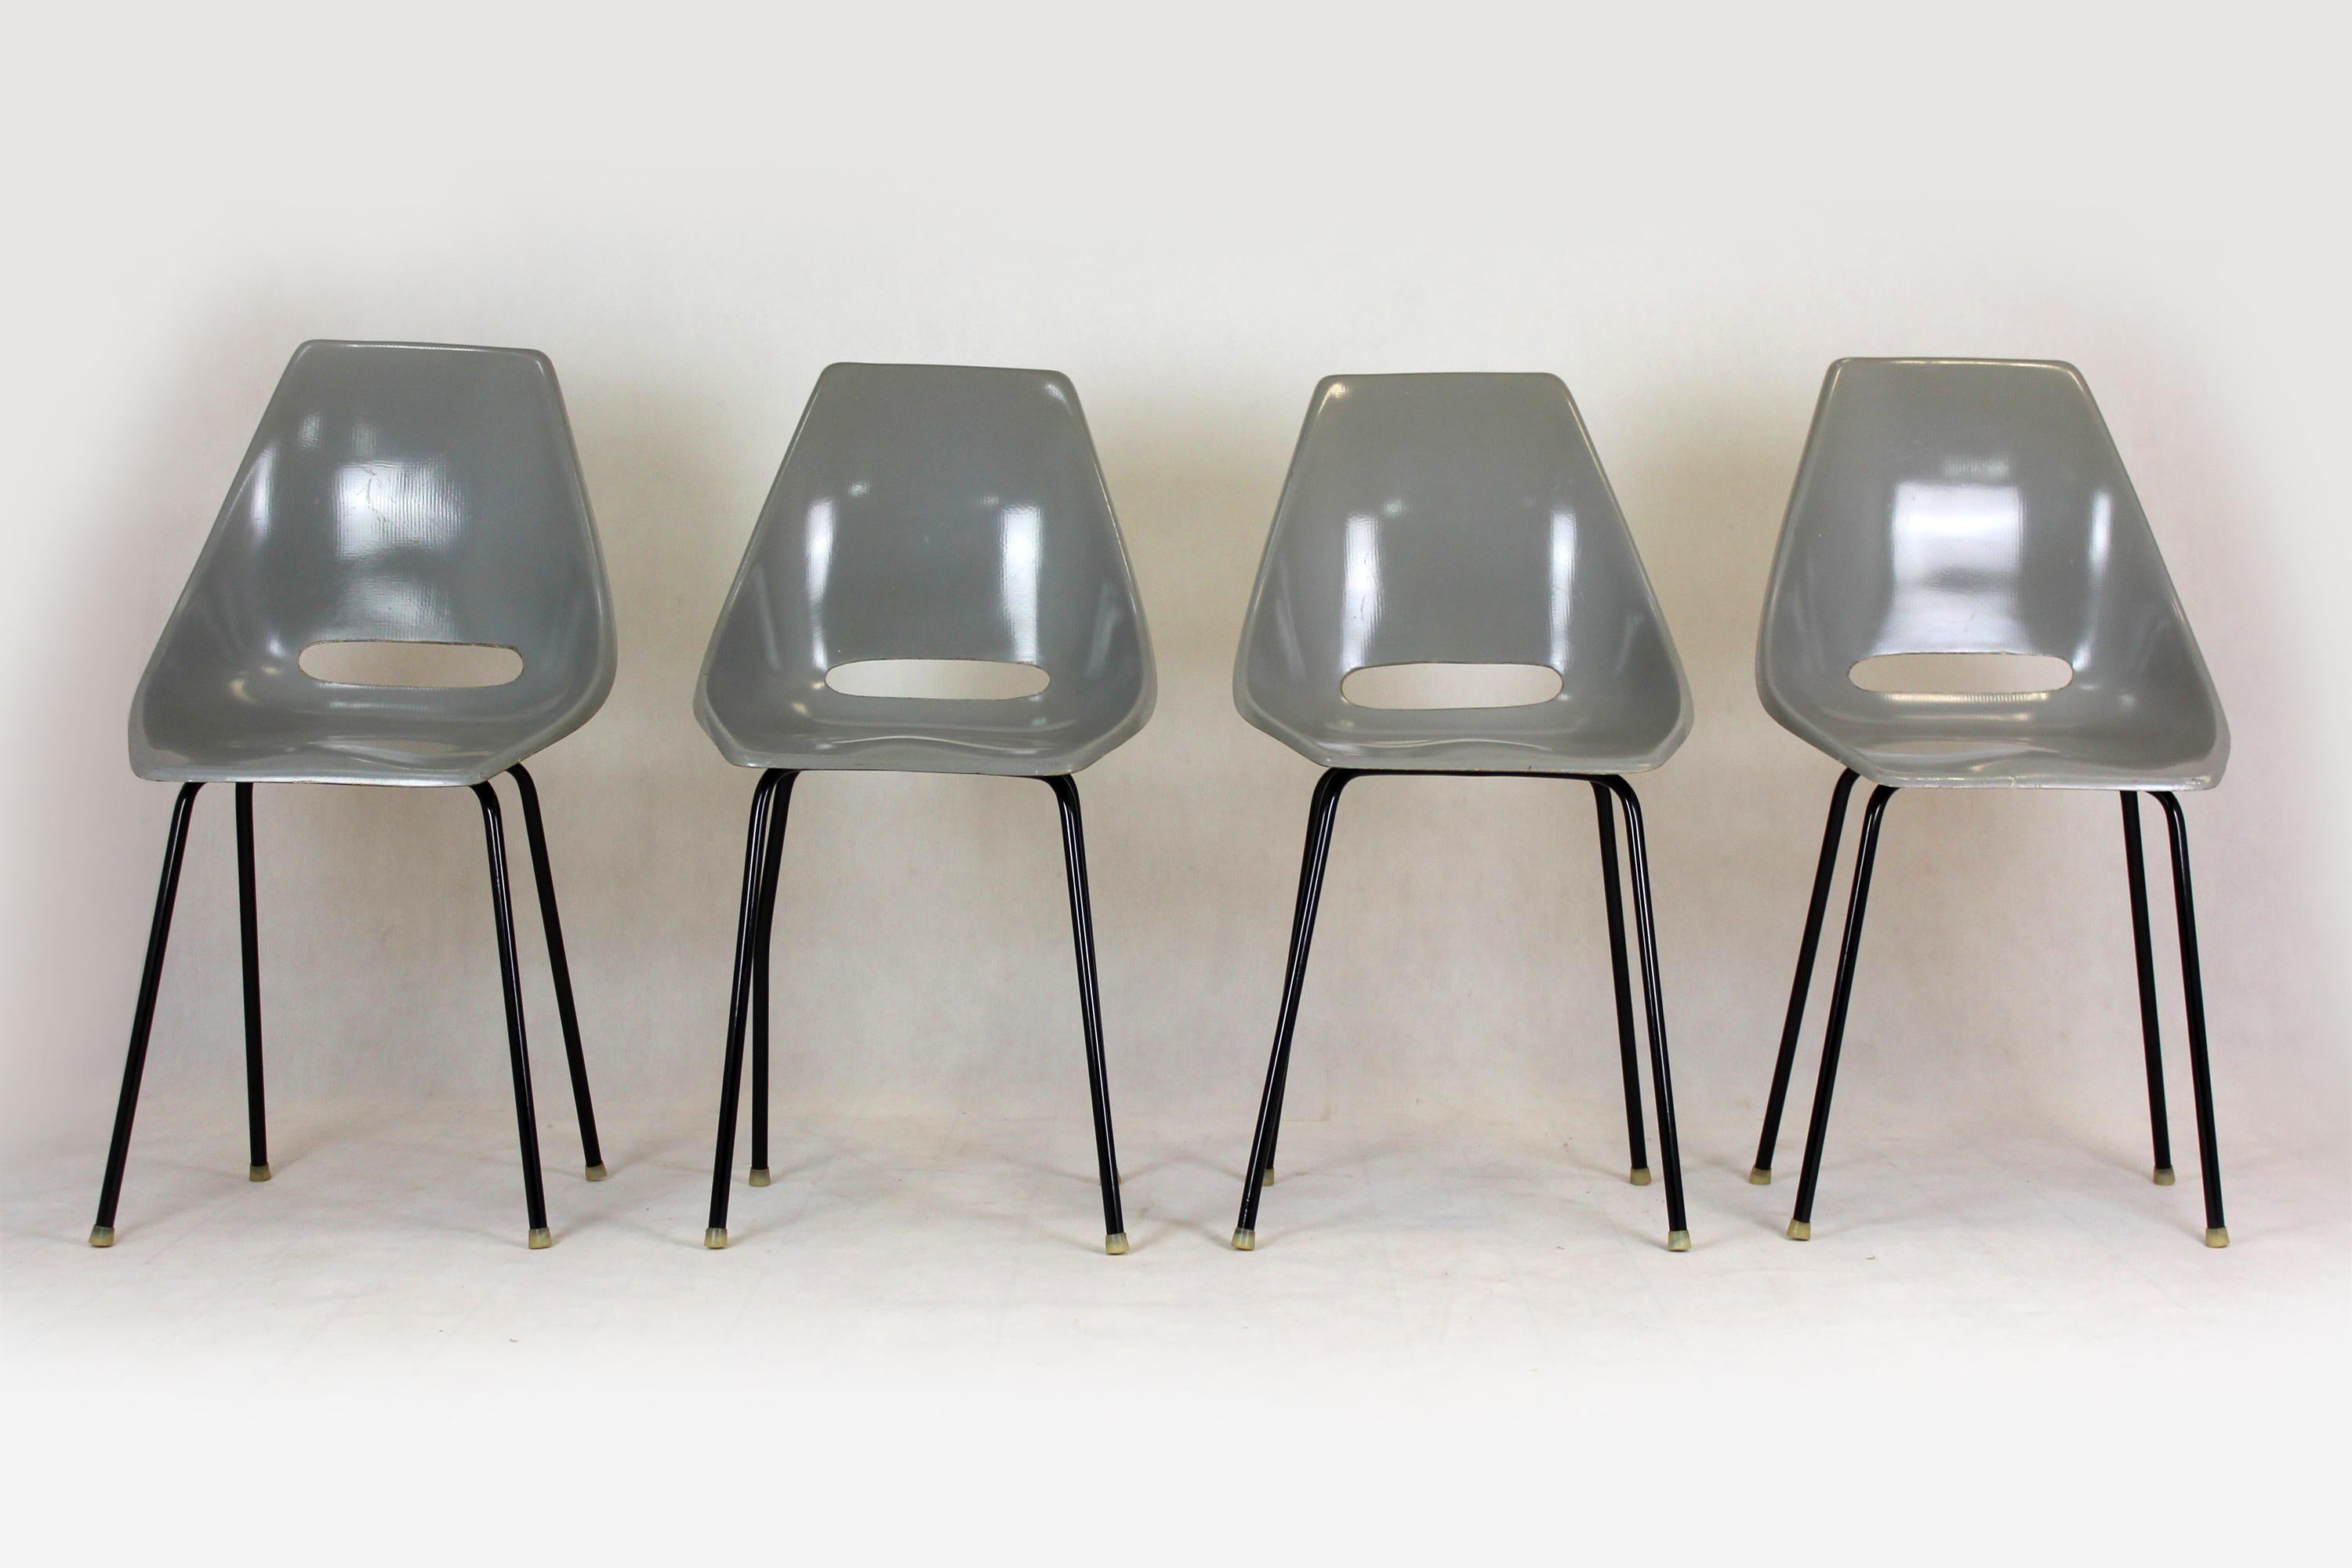 Ein Satz von vier Stühlen, hergestellt von Vertex in den 1960er Jahren in der Tschechoslowakei. Diese Stühle wurden 1964 von Miroslav Navratil entworfen und zunächst in den Straßenbahnen des Typs Tatra T3 eingesetzt - der meistgenutzten Straßenbahn